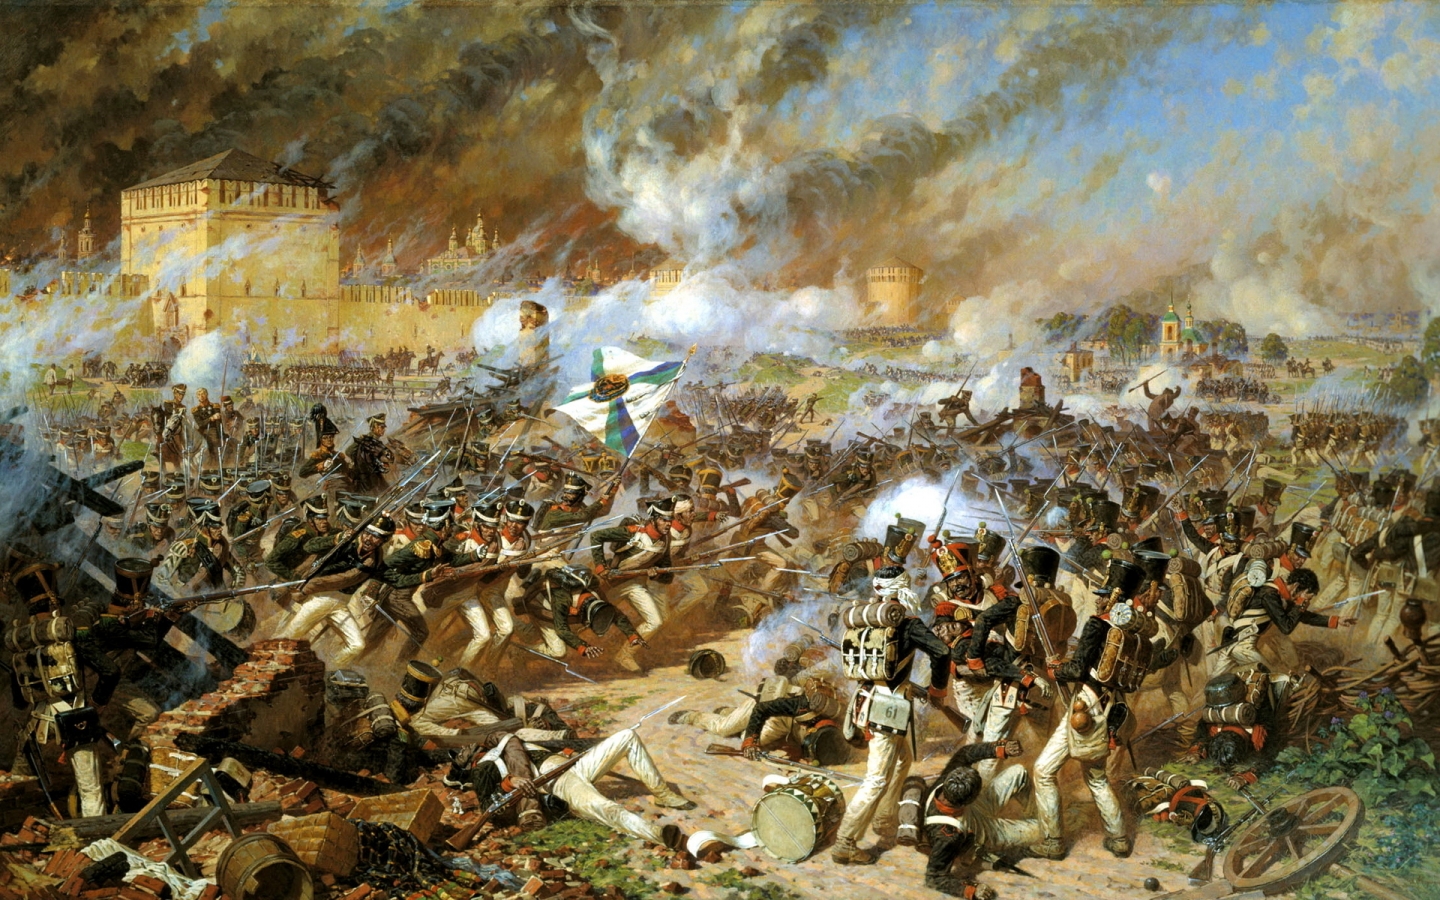 War Scene Paint for 1440 x 900 widescreen resolution